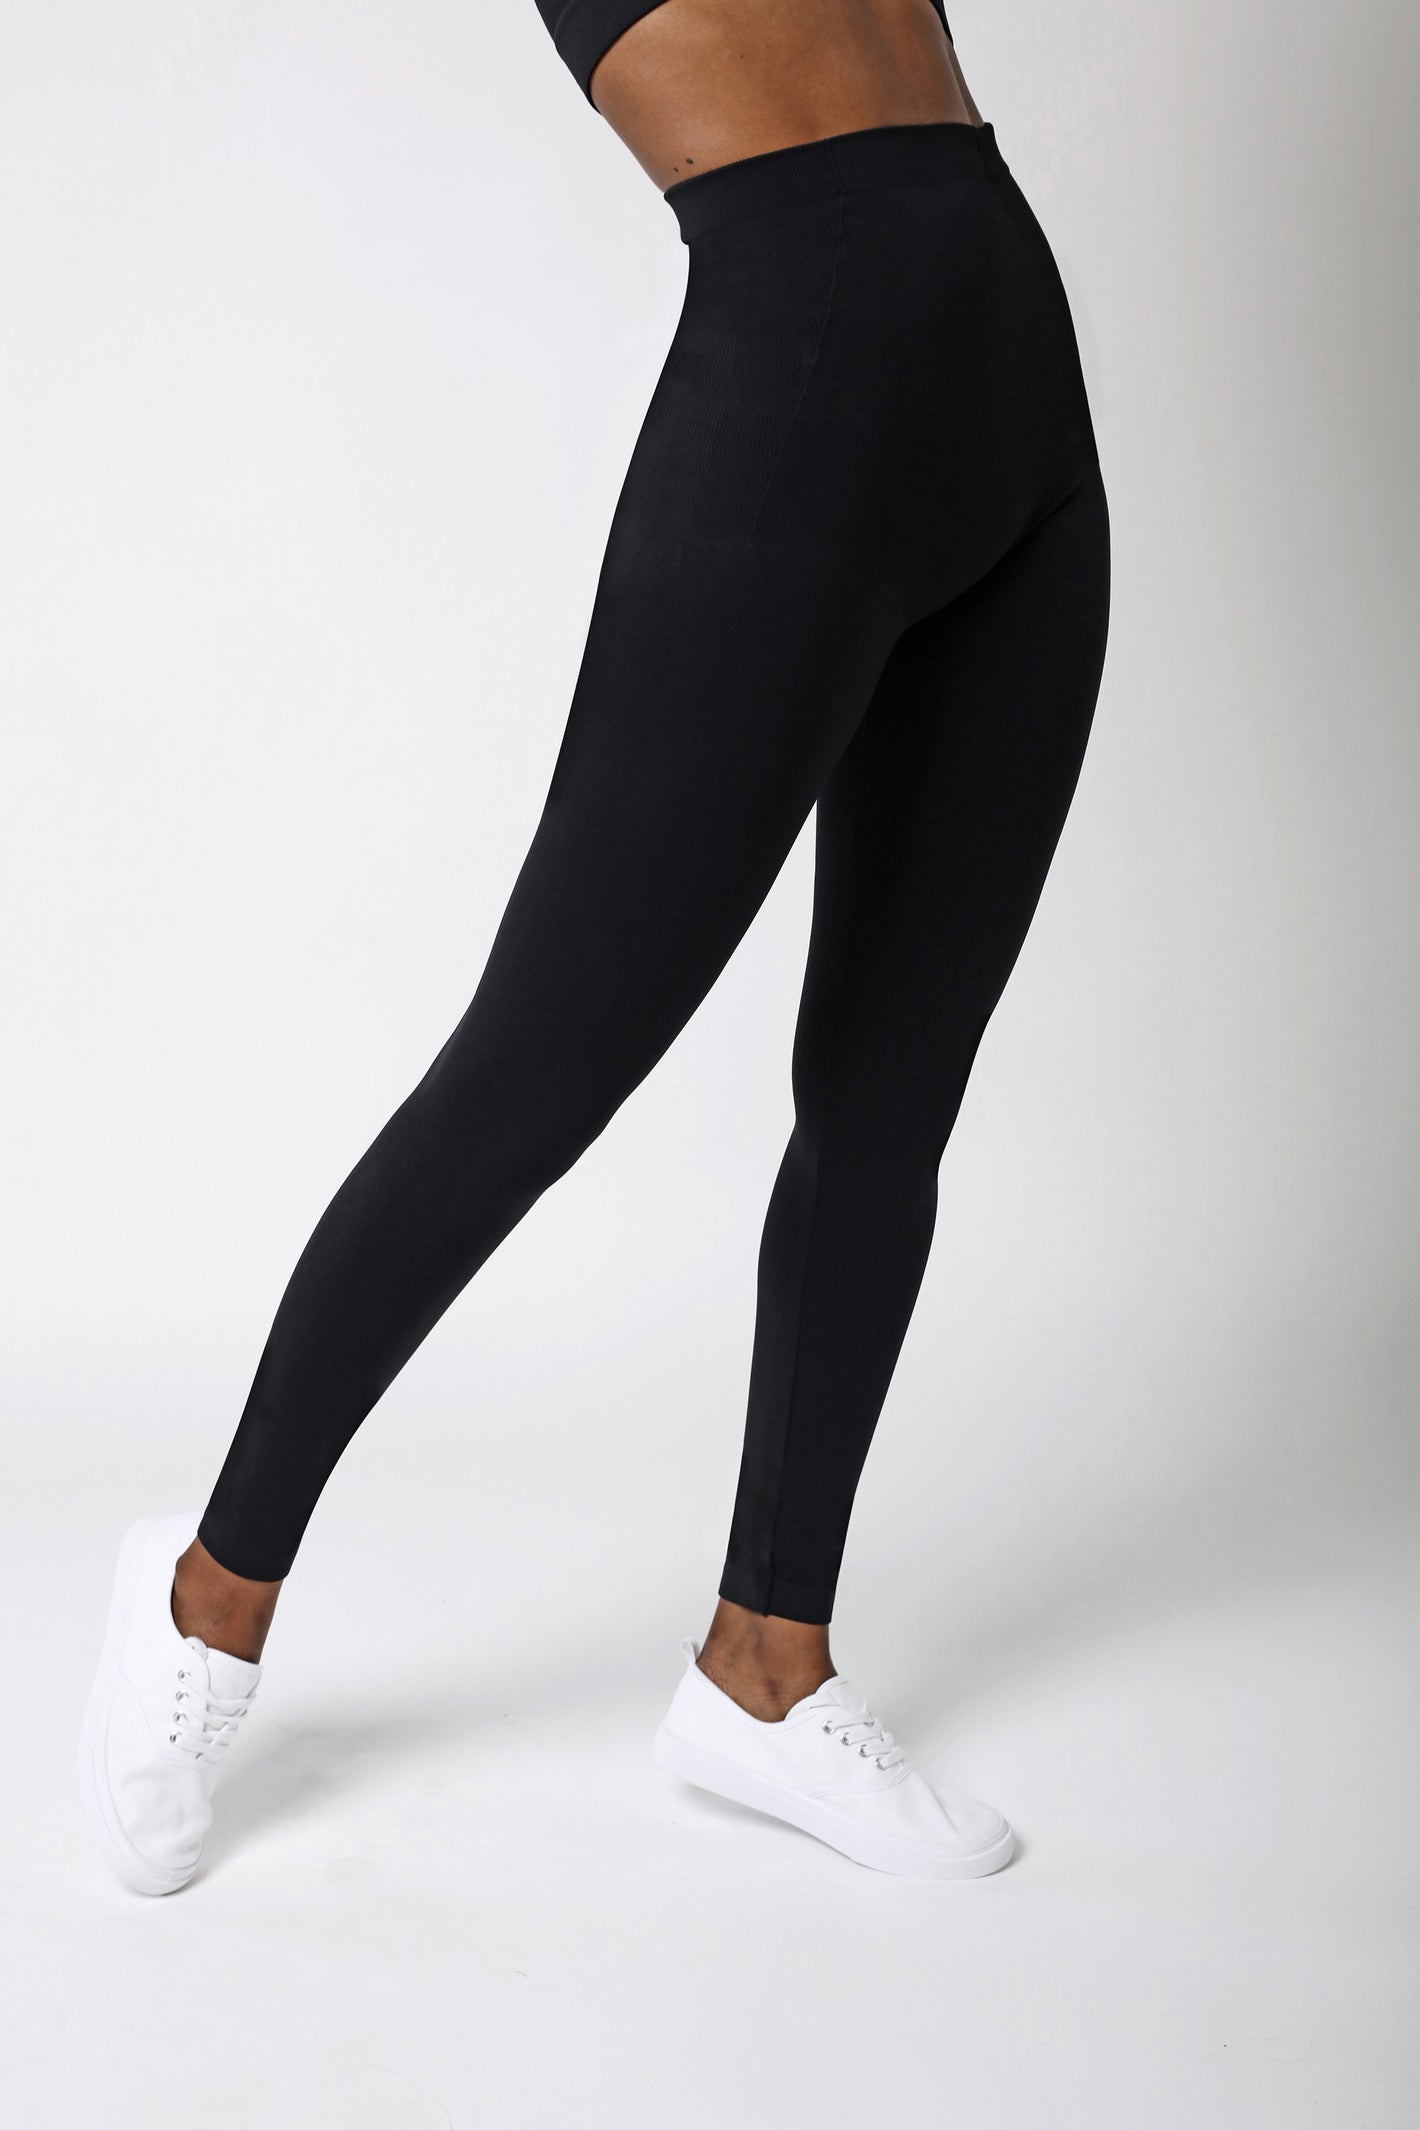 side view of black legging for women - Black